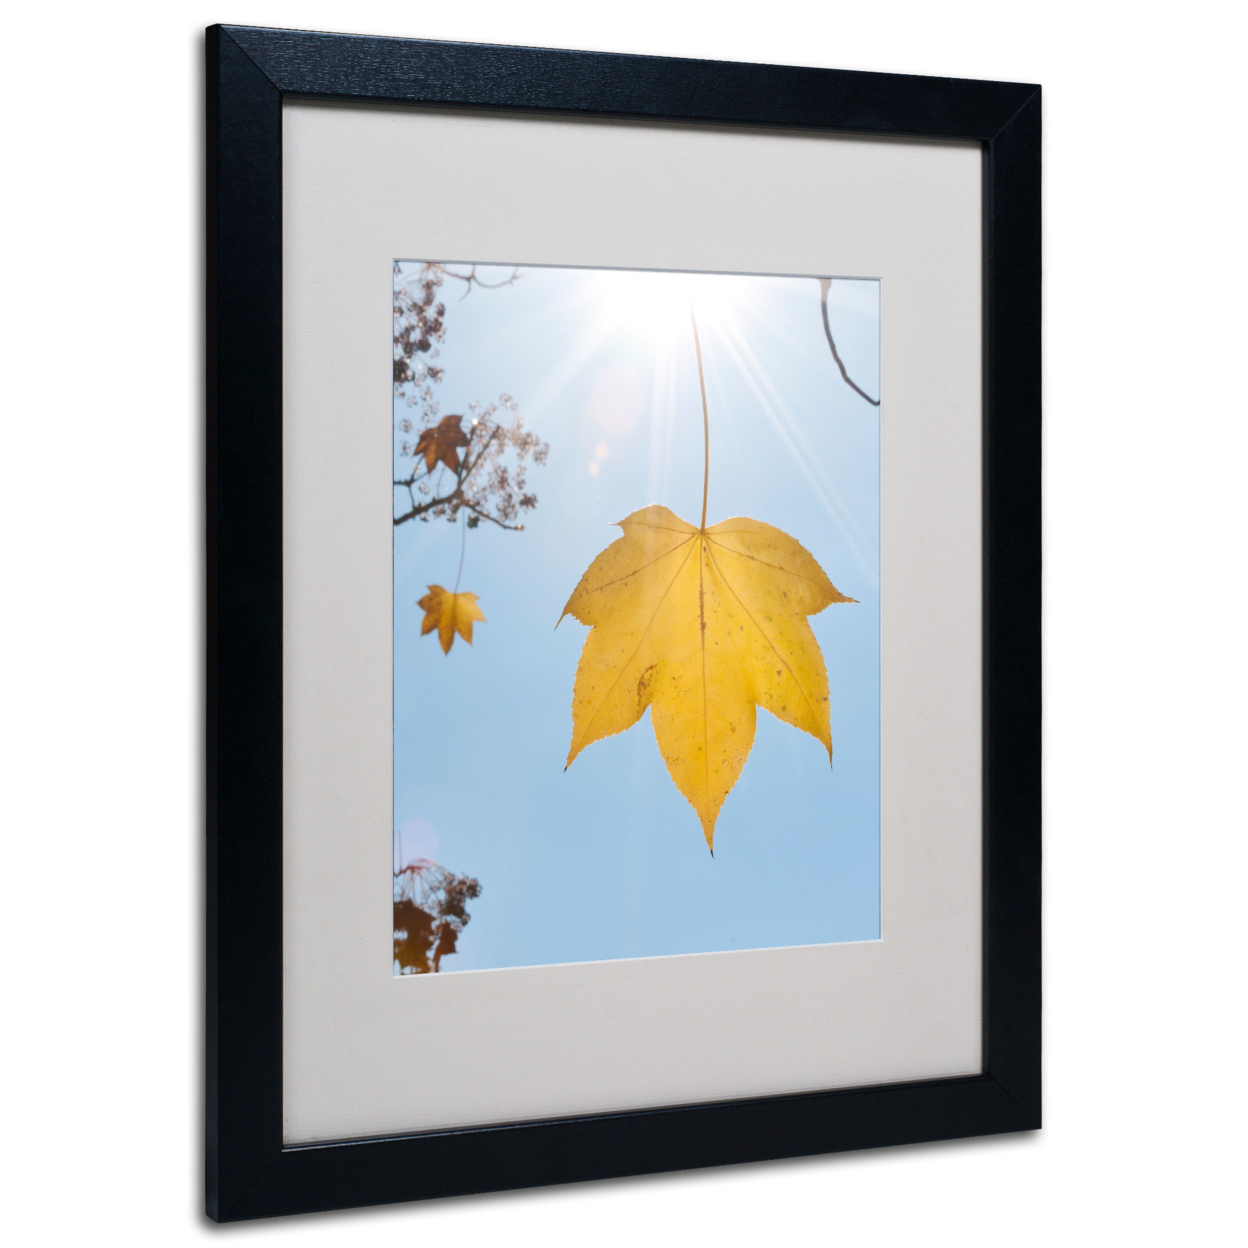 Kurt Shaffer 'Autumn Inspiration' Black Wooden Framed Art 18 X 22 Inches